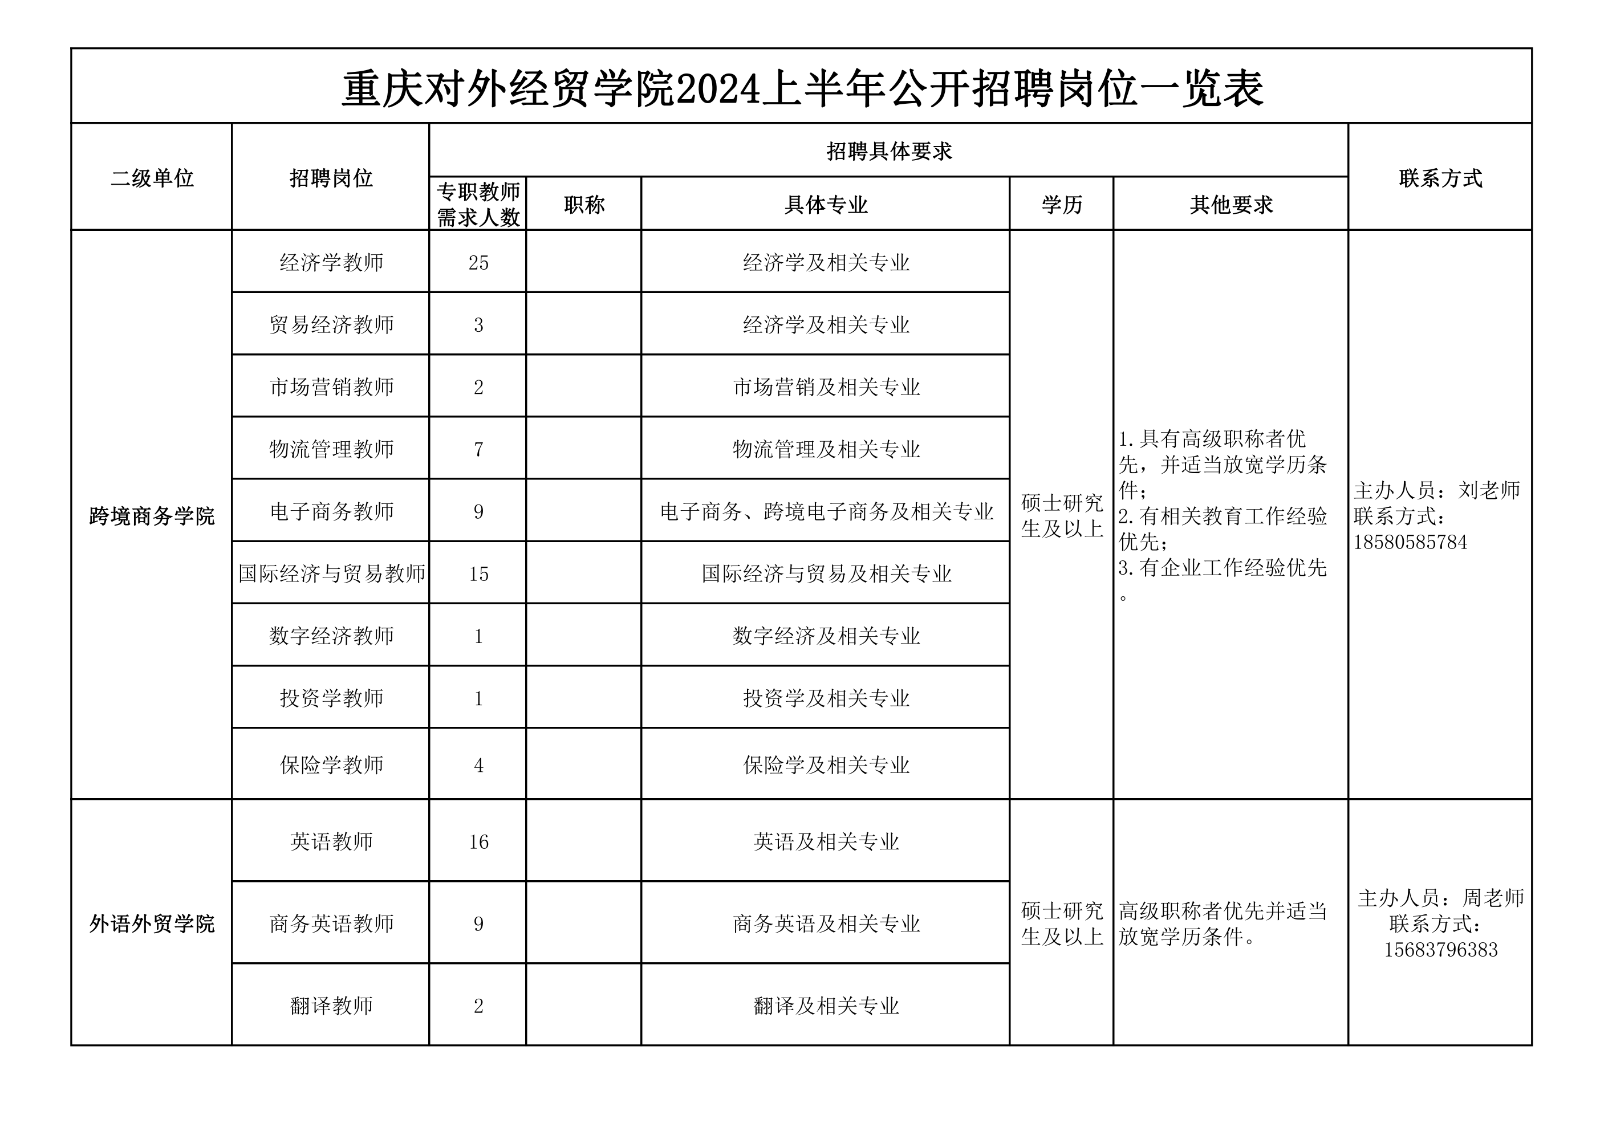 附件1：重庆对外经贸学院2024上半年公开招聘岗位一览表_00.png